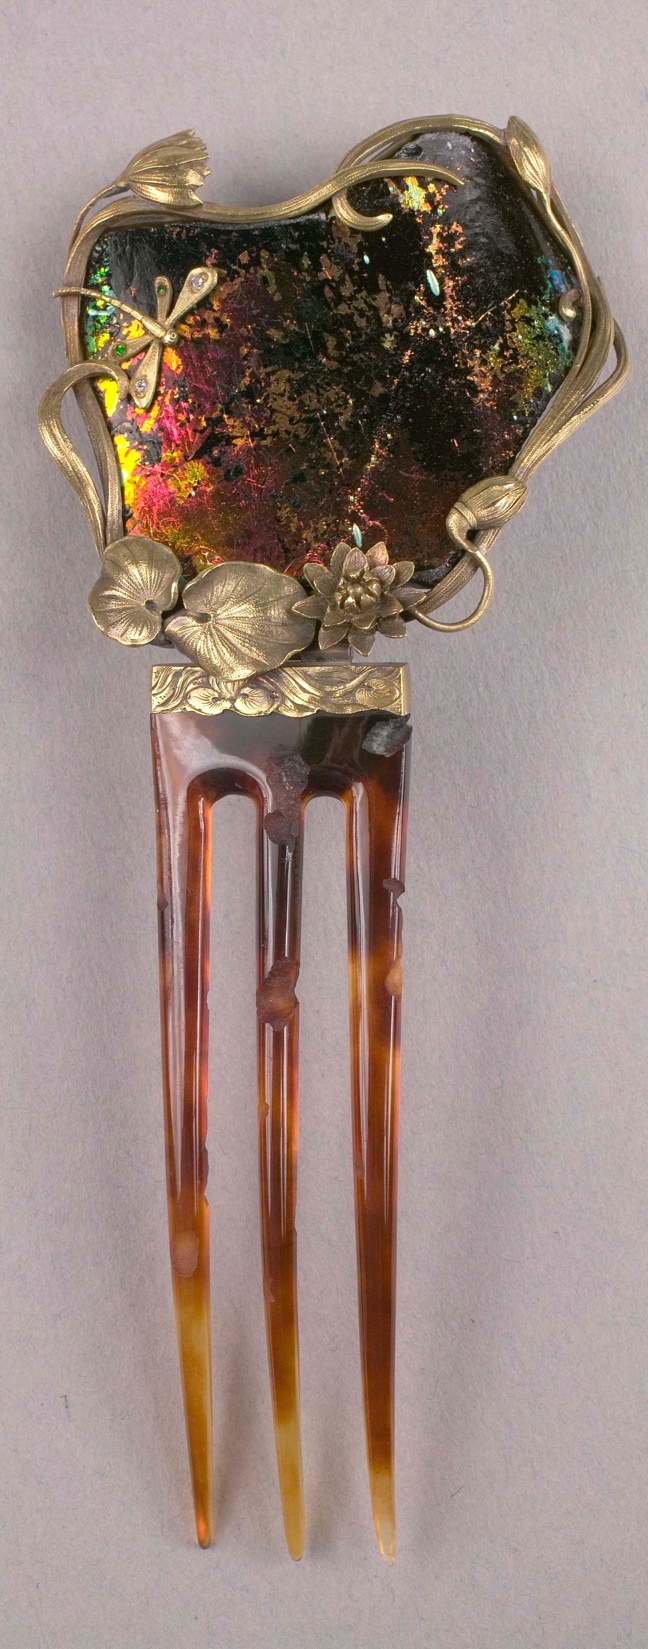 Ornamental Comb, c. 1900